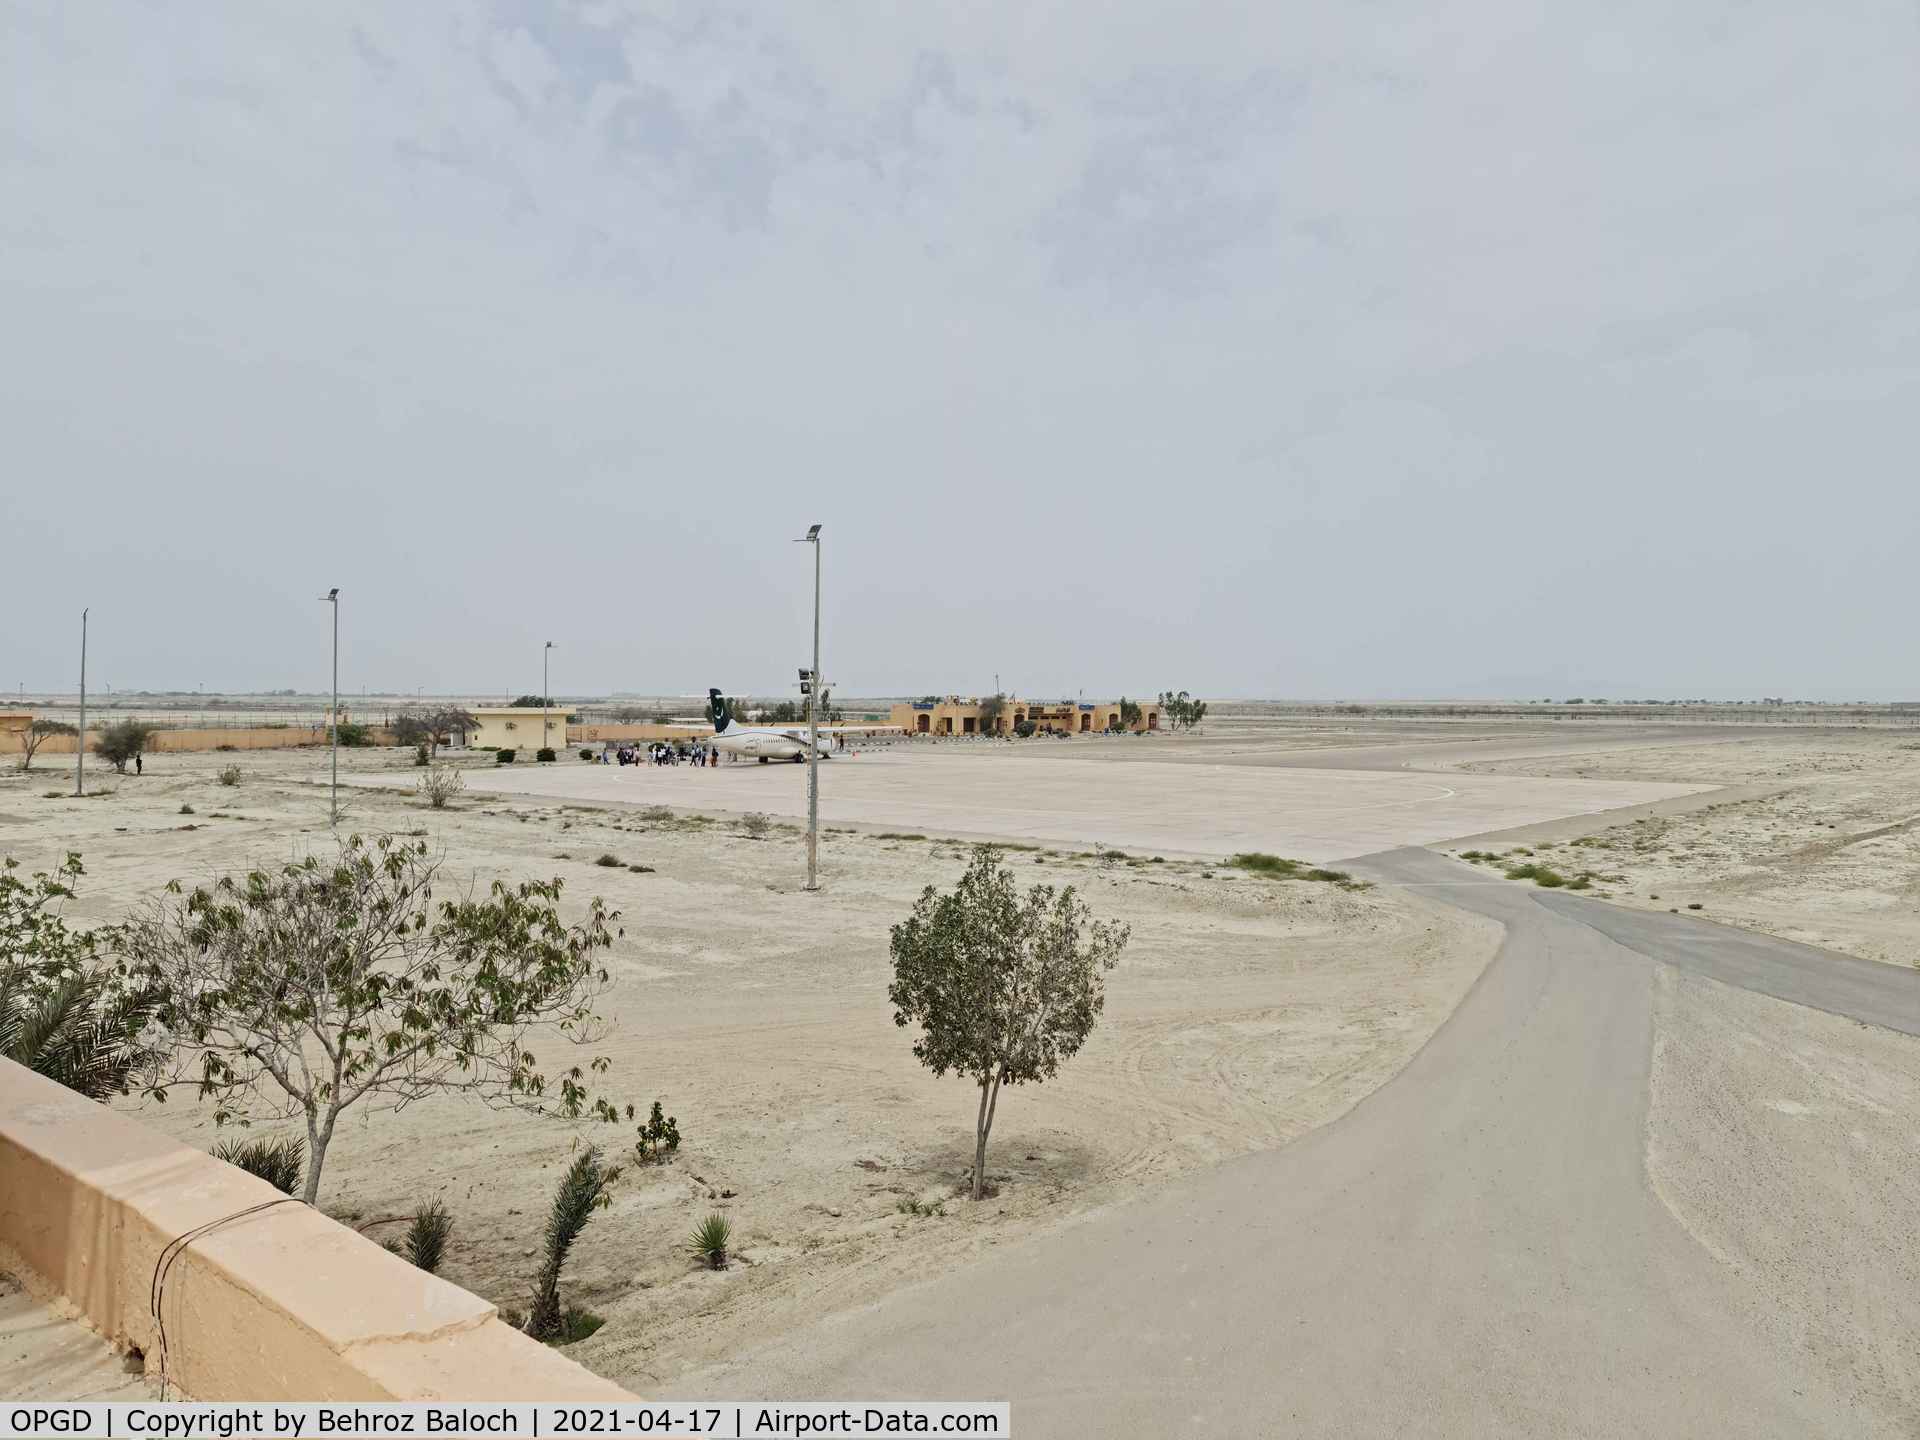 Gwadar International Airport, Gwadar Pakistan (OPGD) - Gwadar Apron with PIA ATR72.